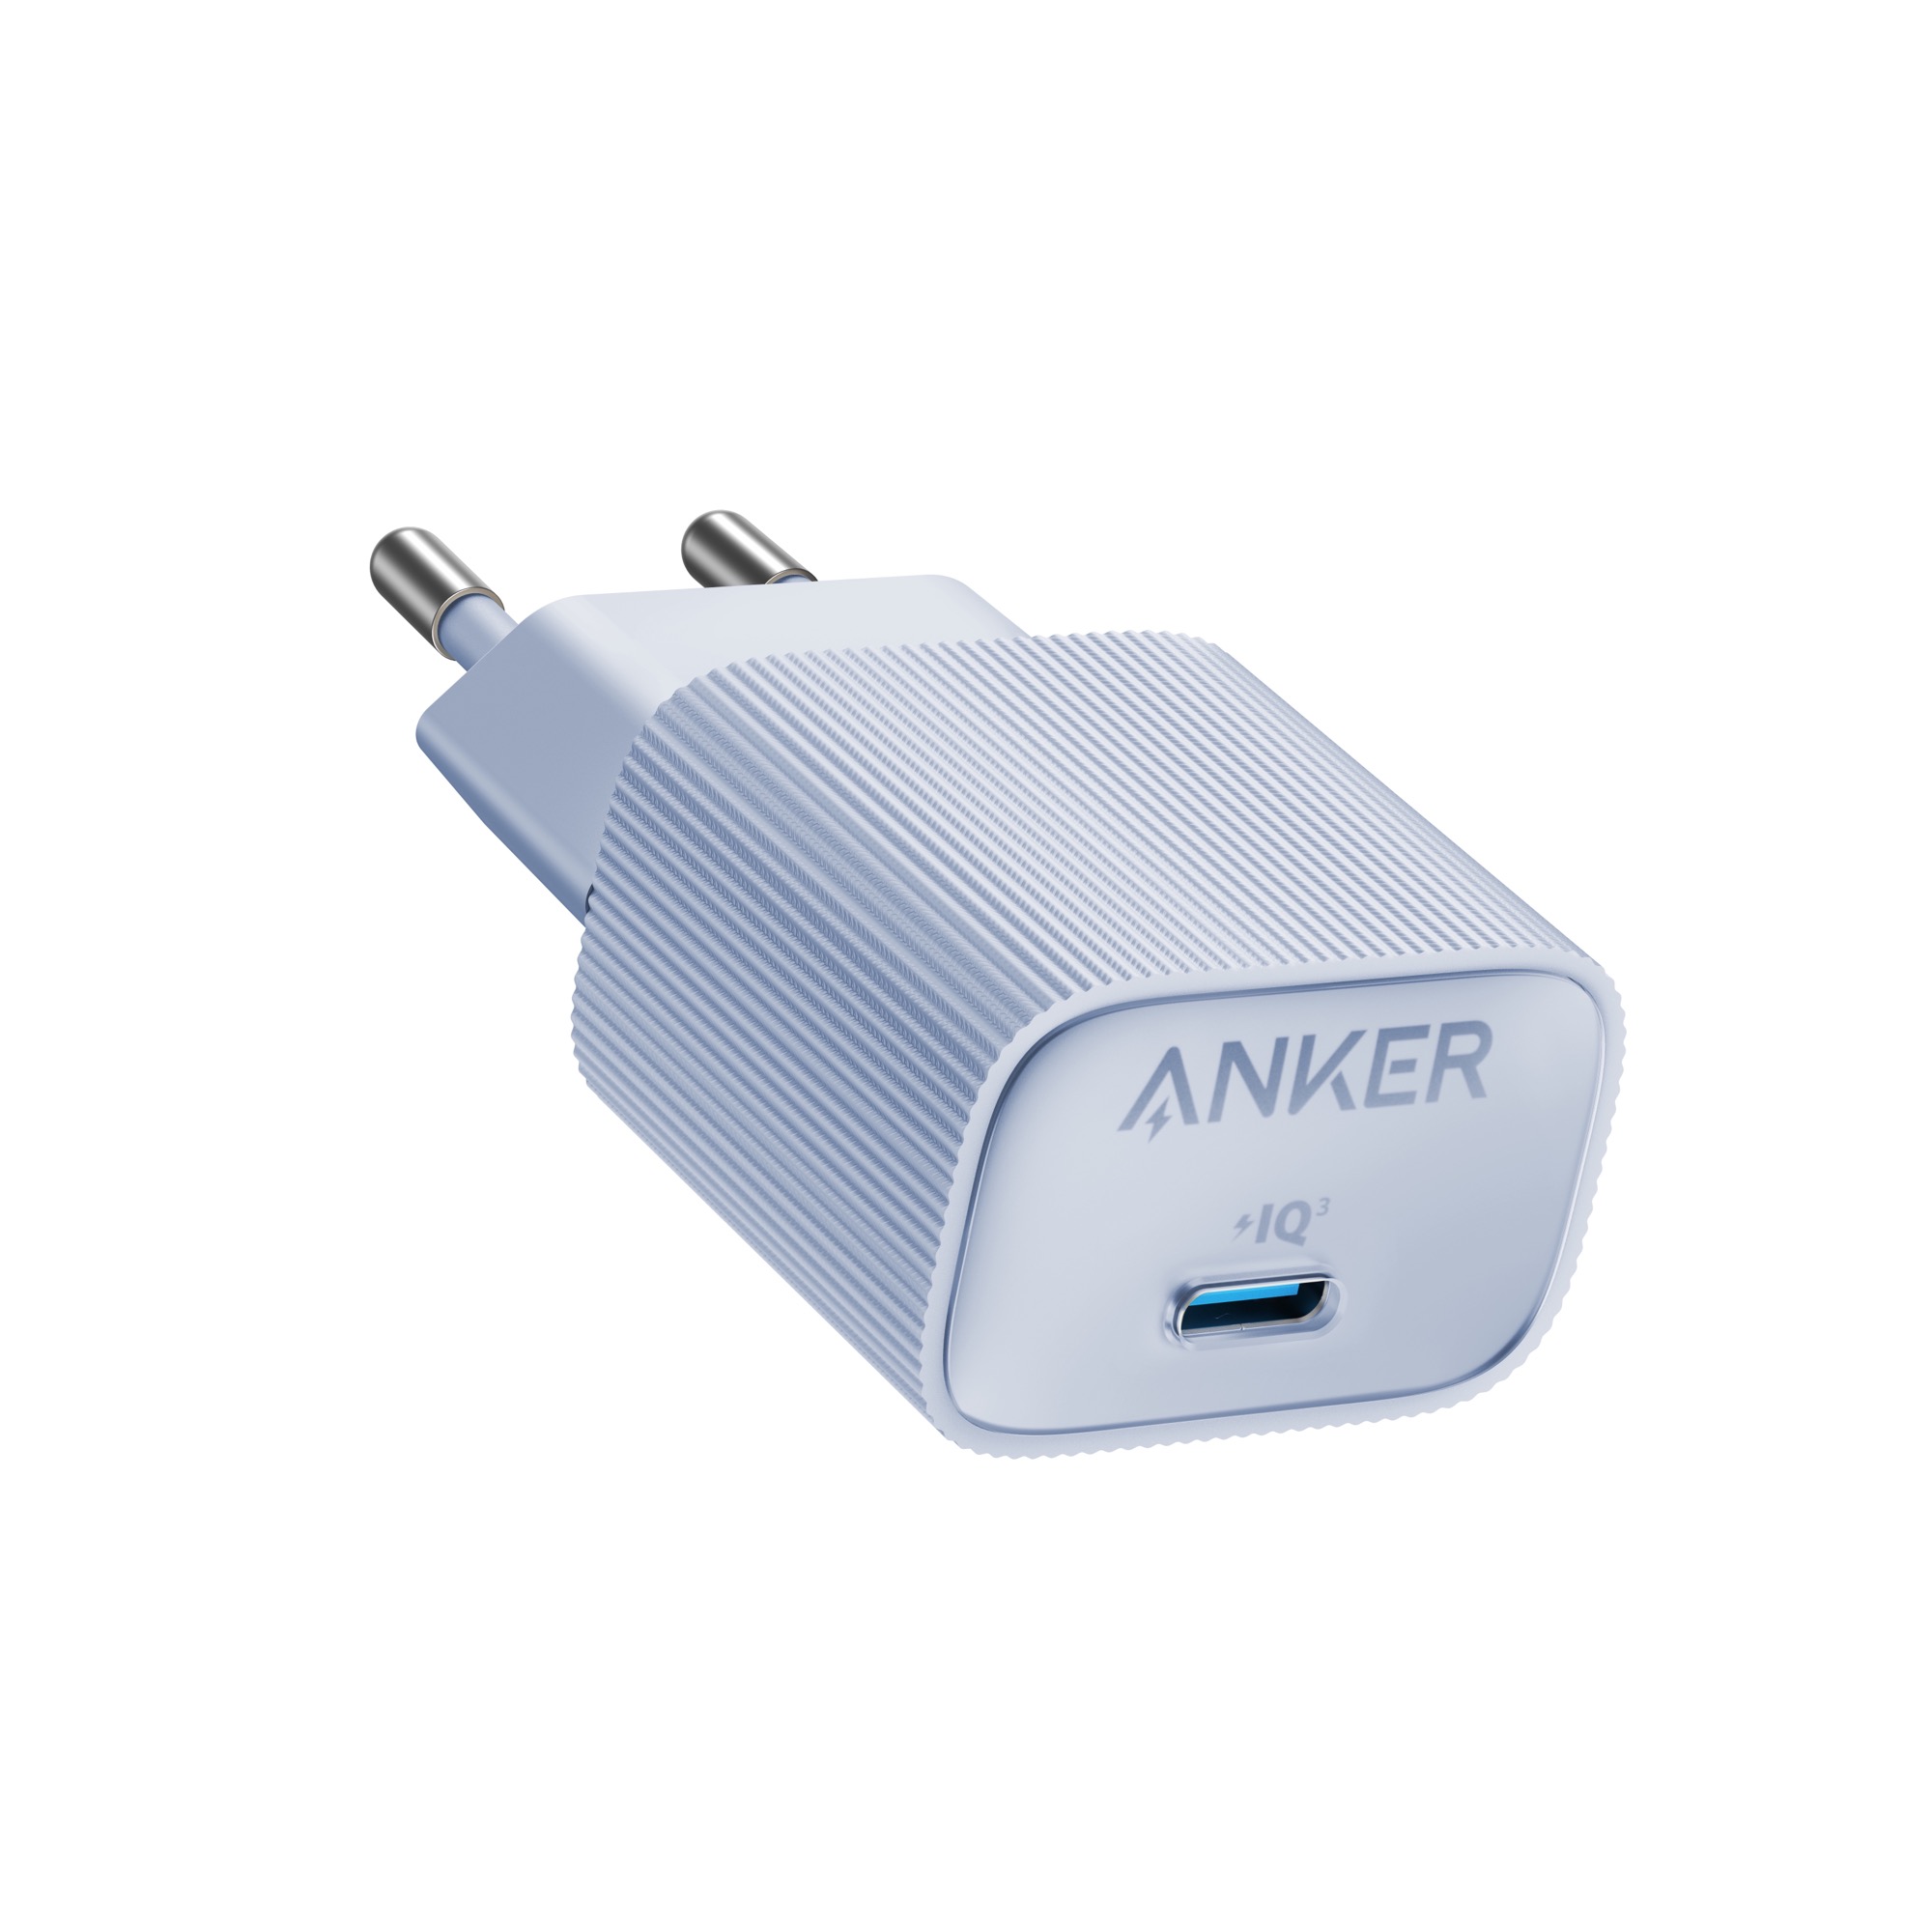 Chargeur pour téléphone mobile Anker nano chargeur rapide iphone